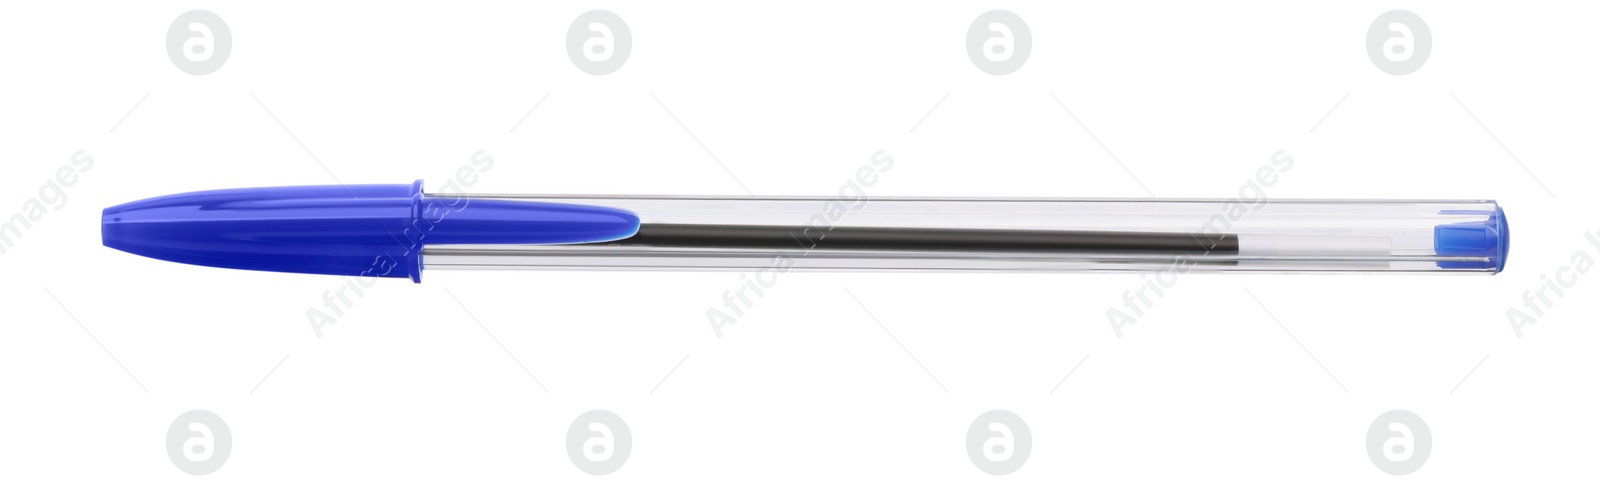 Photo of New stylish blue pen isolated on white